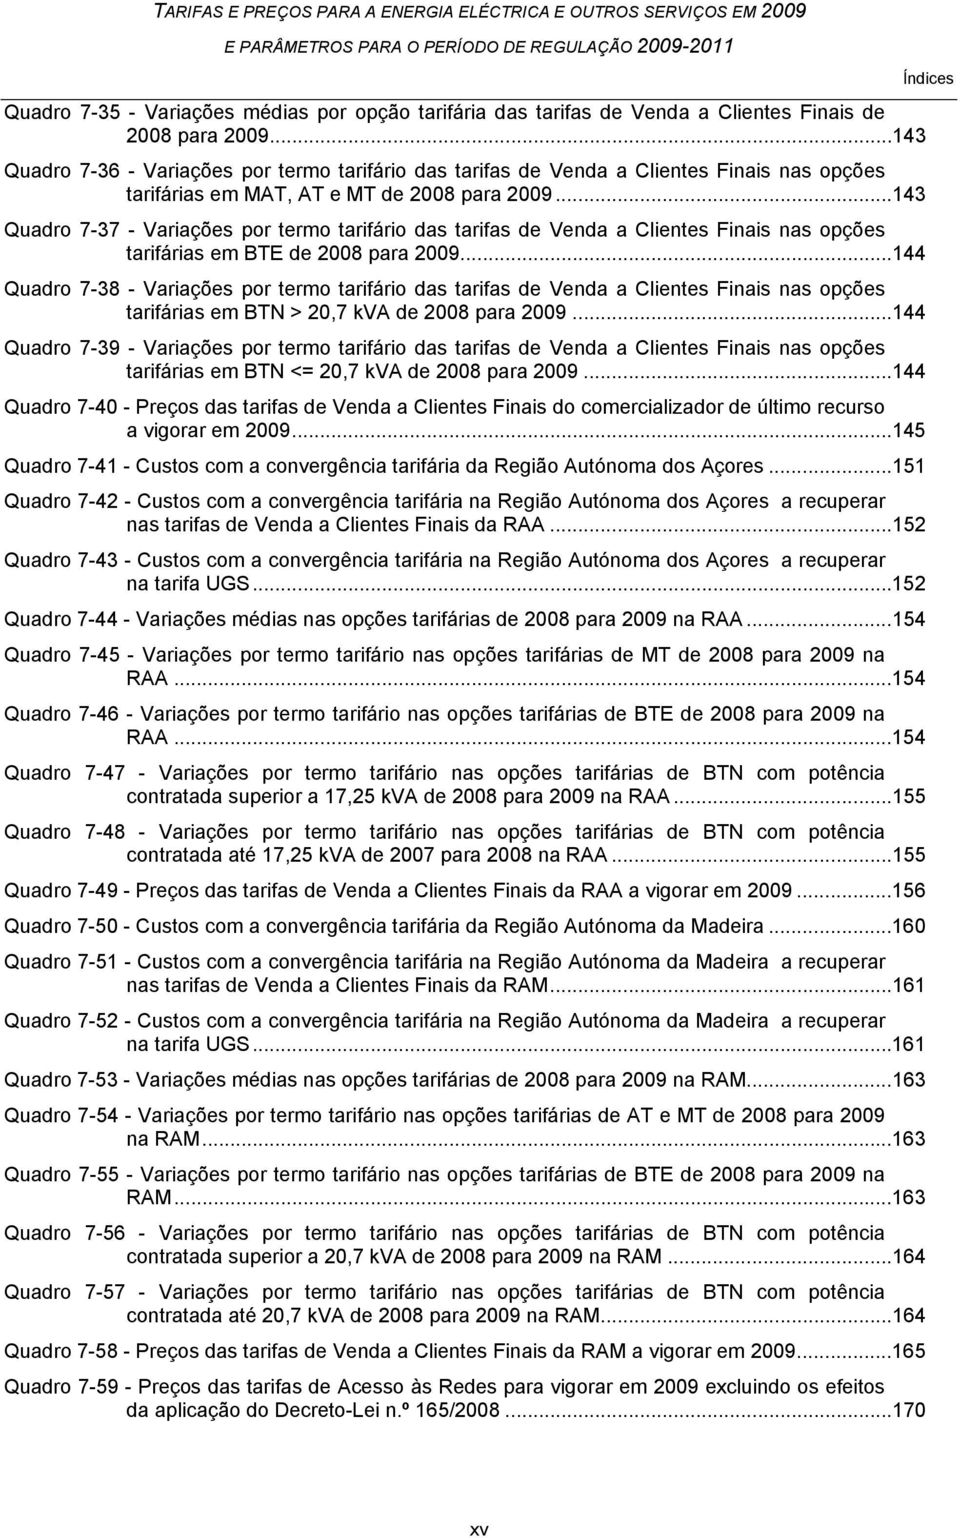 ..143 Quadro 7-37 - Variações por termo tarifário das tarifas de Venda a Clientes Finais nas opções tarifárias em BTE de 2008 para 2009.